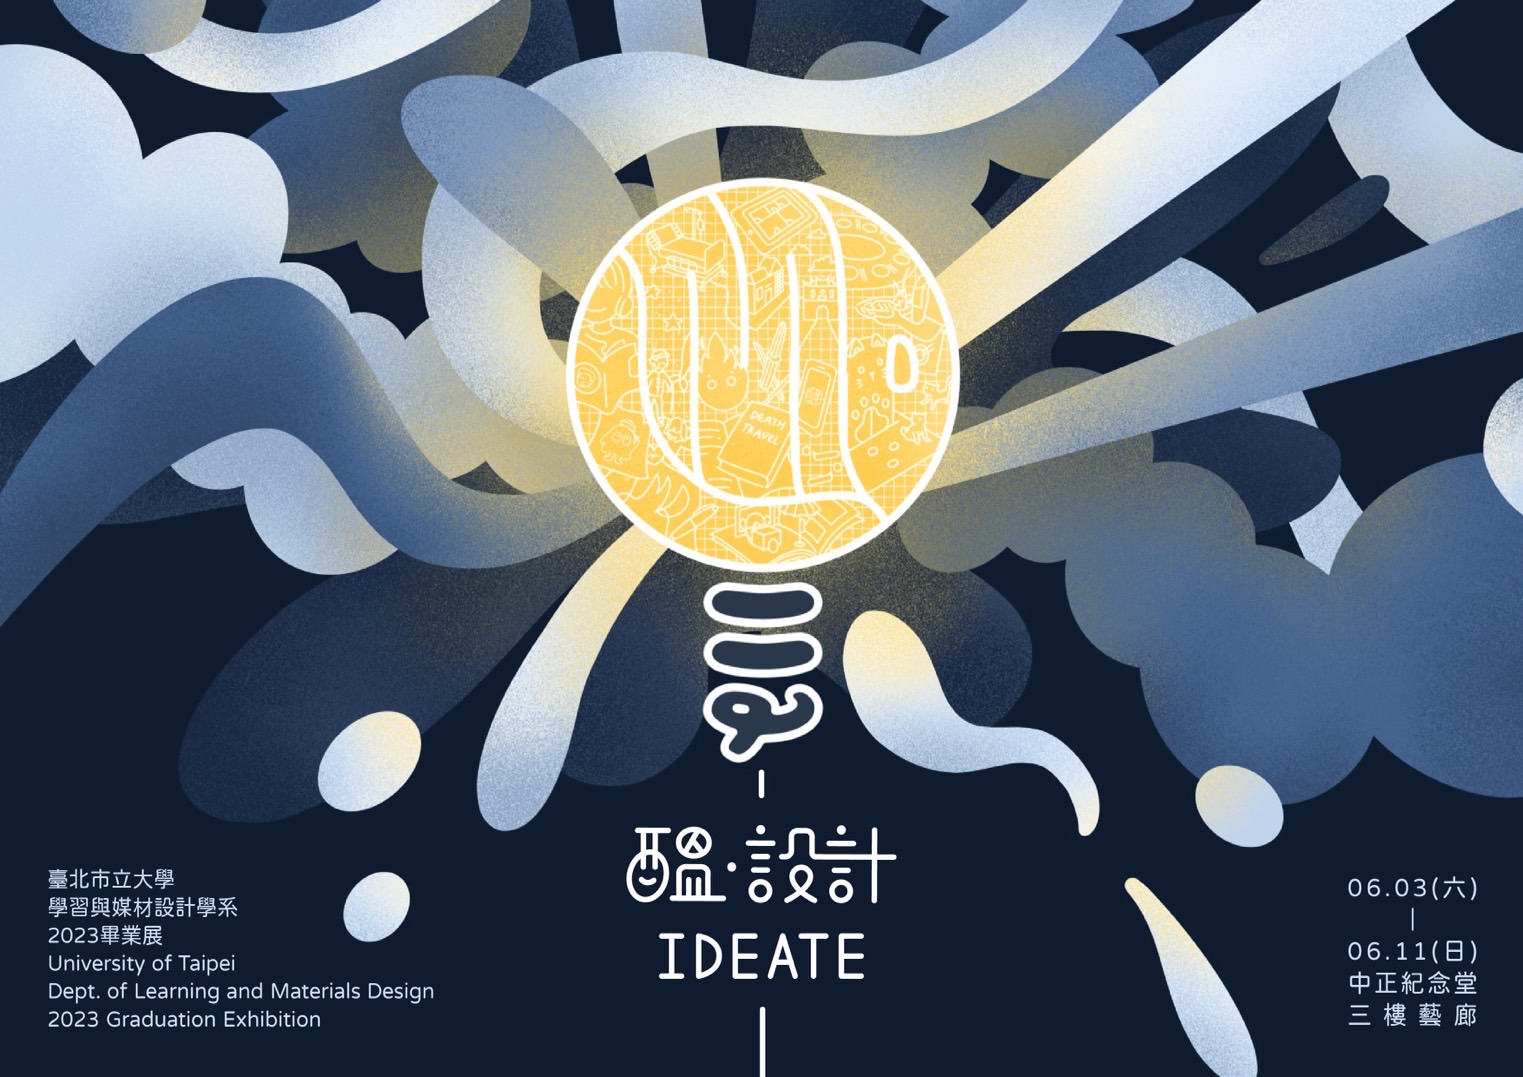 醞。設計 IDEATE－臺北市立大學學習與媒材設計學系112級畢業展(免費參觀 )